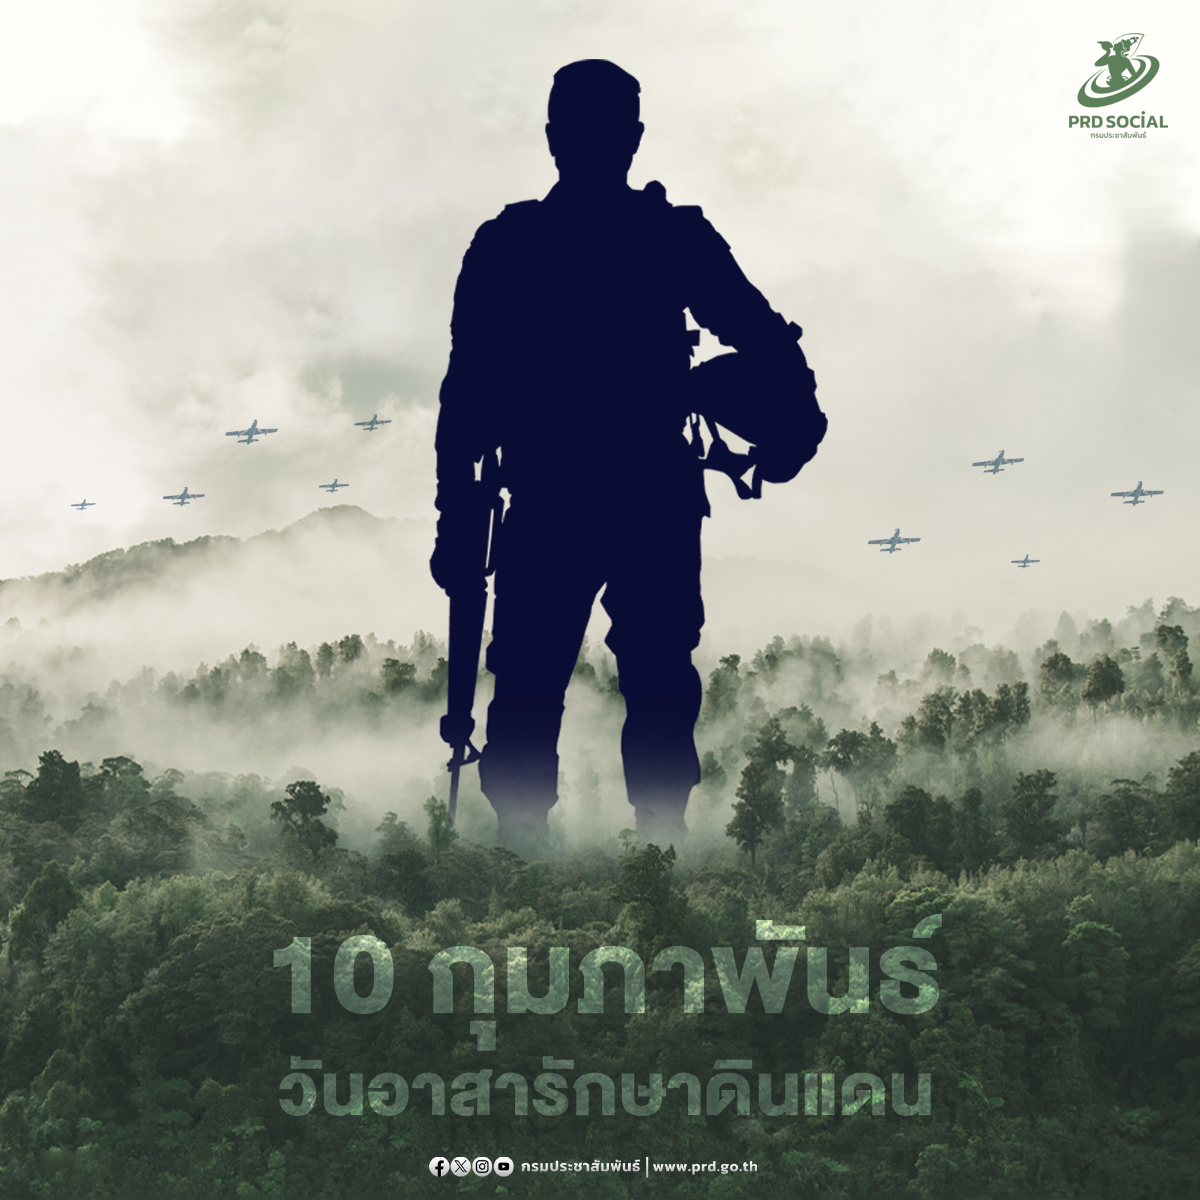 10 กุมภาพันธ์ วันอาสารักษาดินแดน อีกหนึ่งวันสำคัญที่ชาวไทยจะร่วมกันรำลึกถึงความกล้าหาญของหน่วยพลเรือนอาสา ผู้เสียสละเพื่อบ้านเมืองทั้งในภาวะปกติและภาวะสงคราม